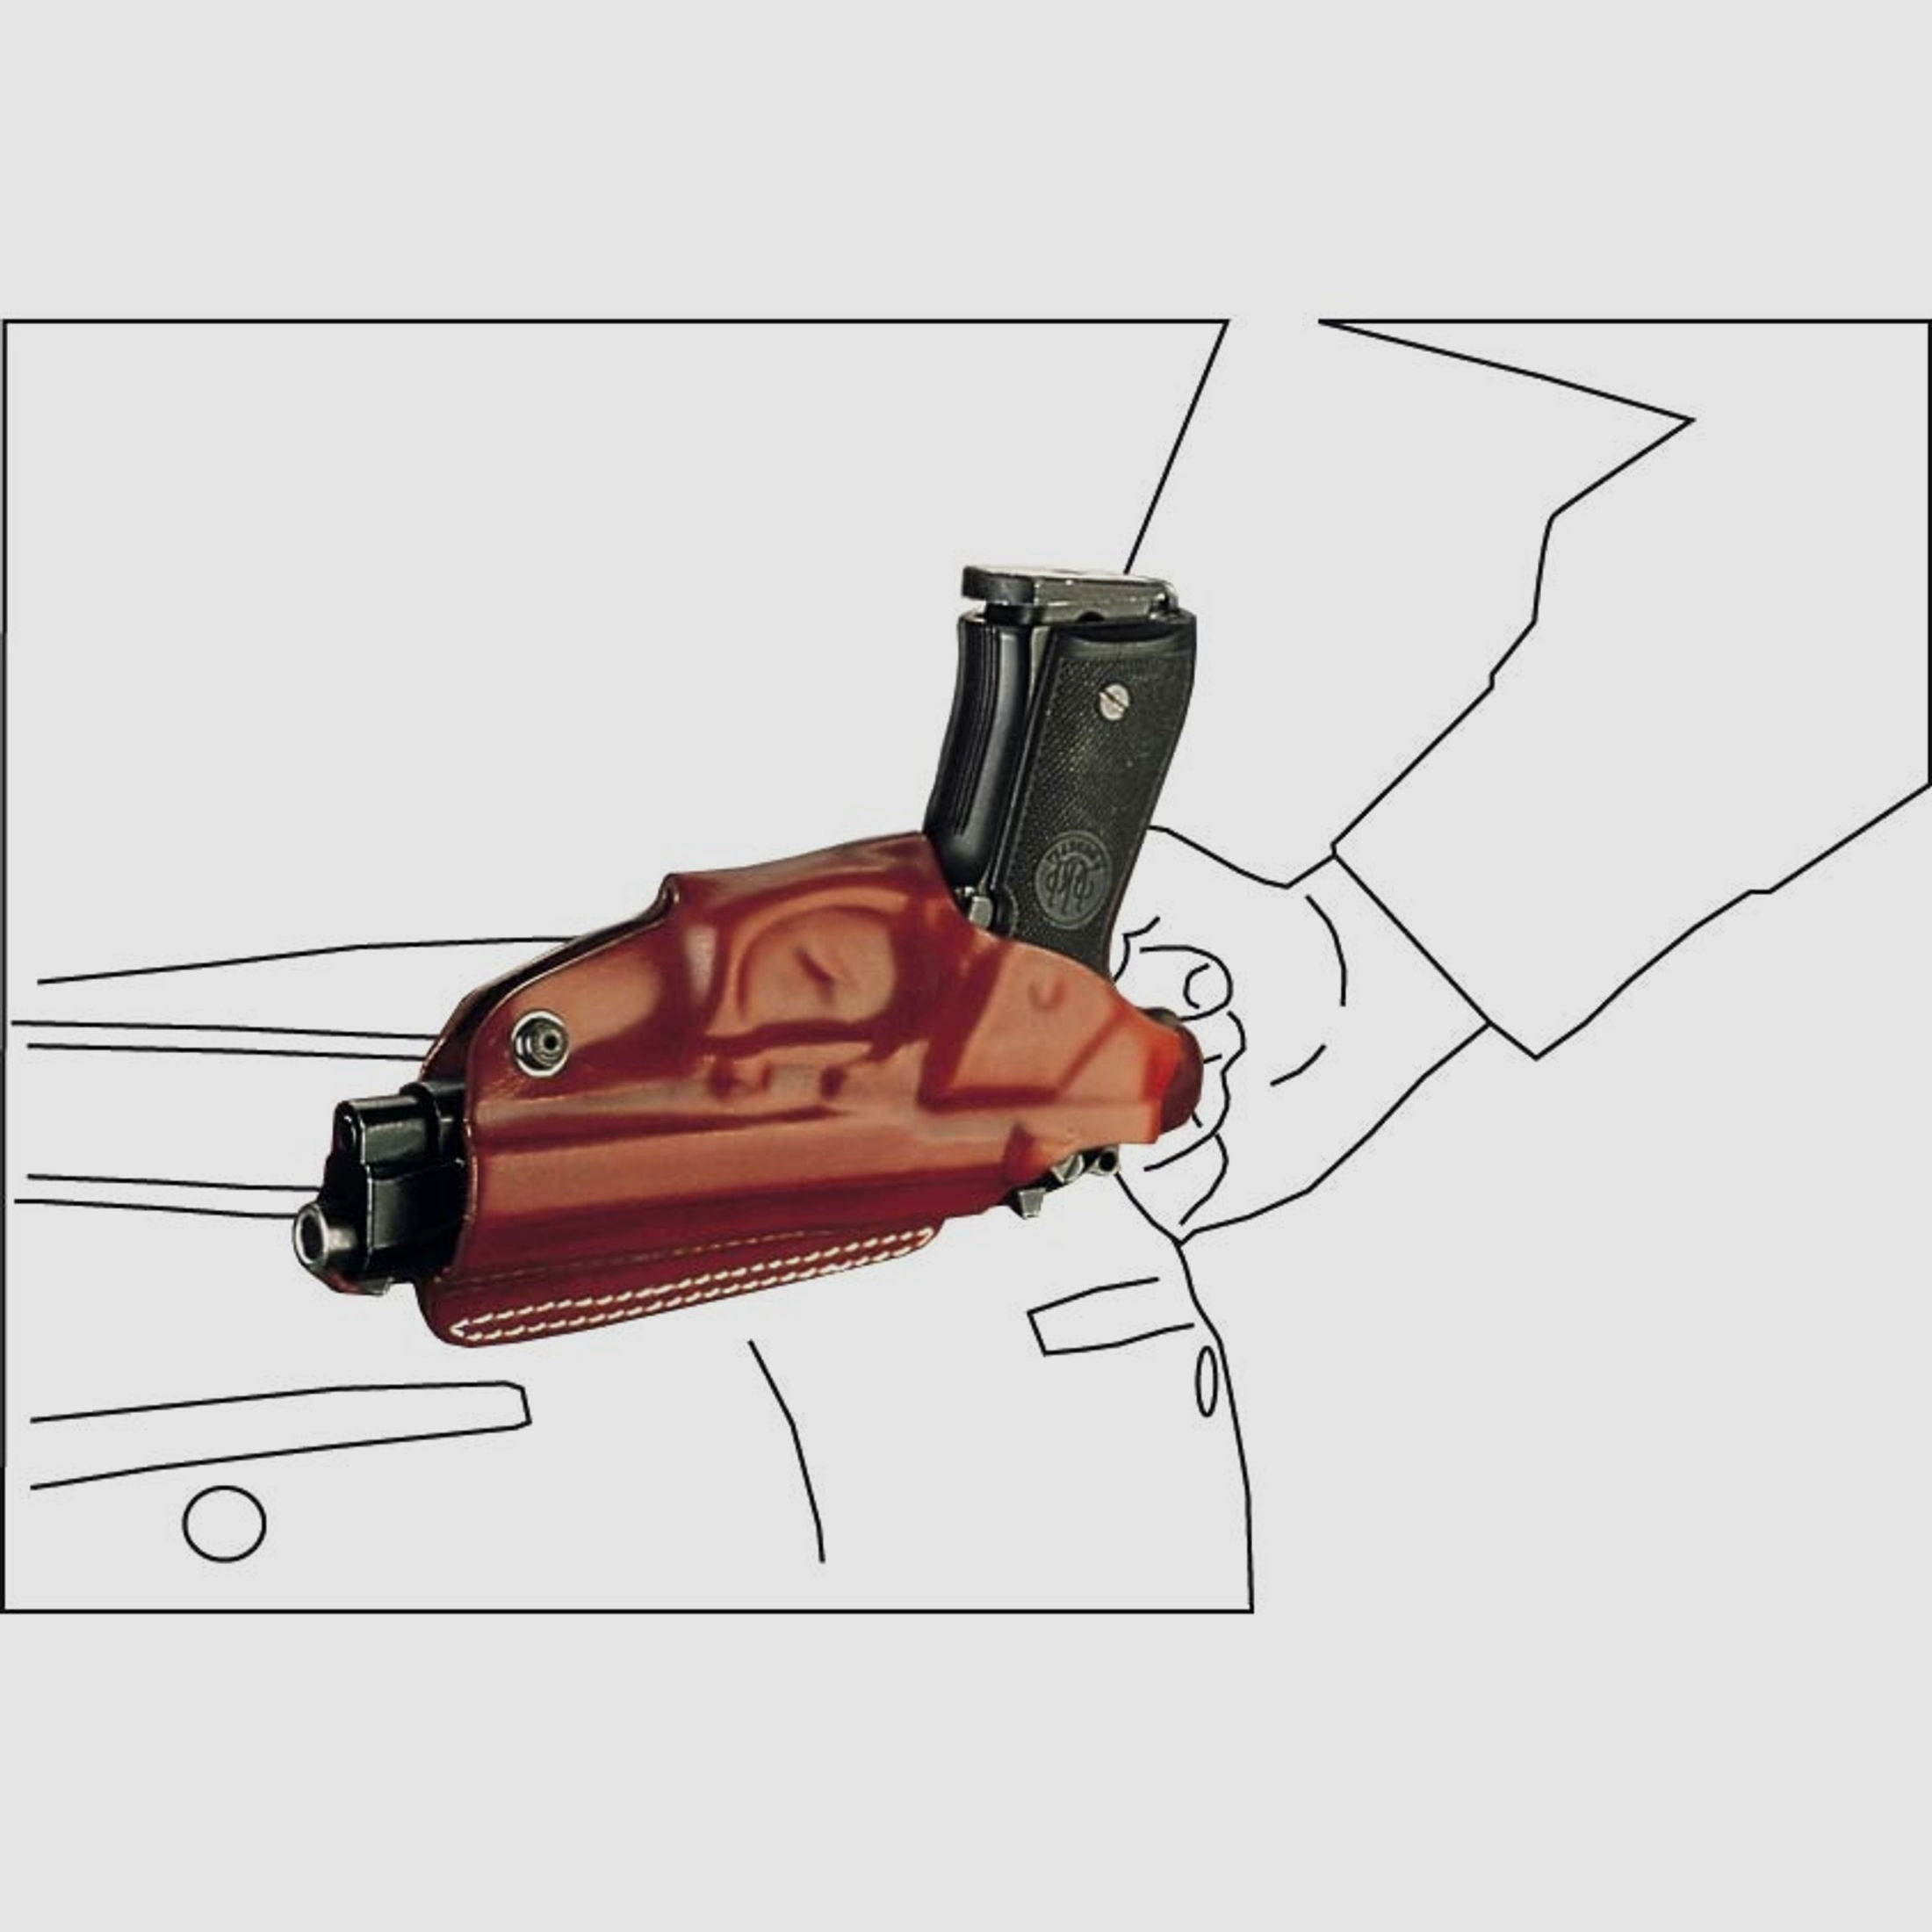 Mehrzweck-Schulterholster/Gürtelholster "Miami" Walther P99/P99Q/PPQ/PPQ M2-Braun-Linkshänder